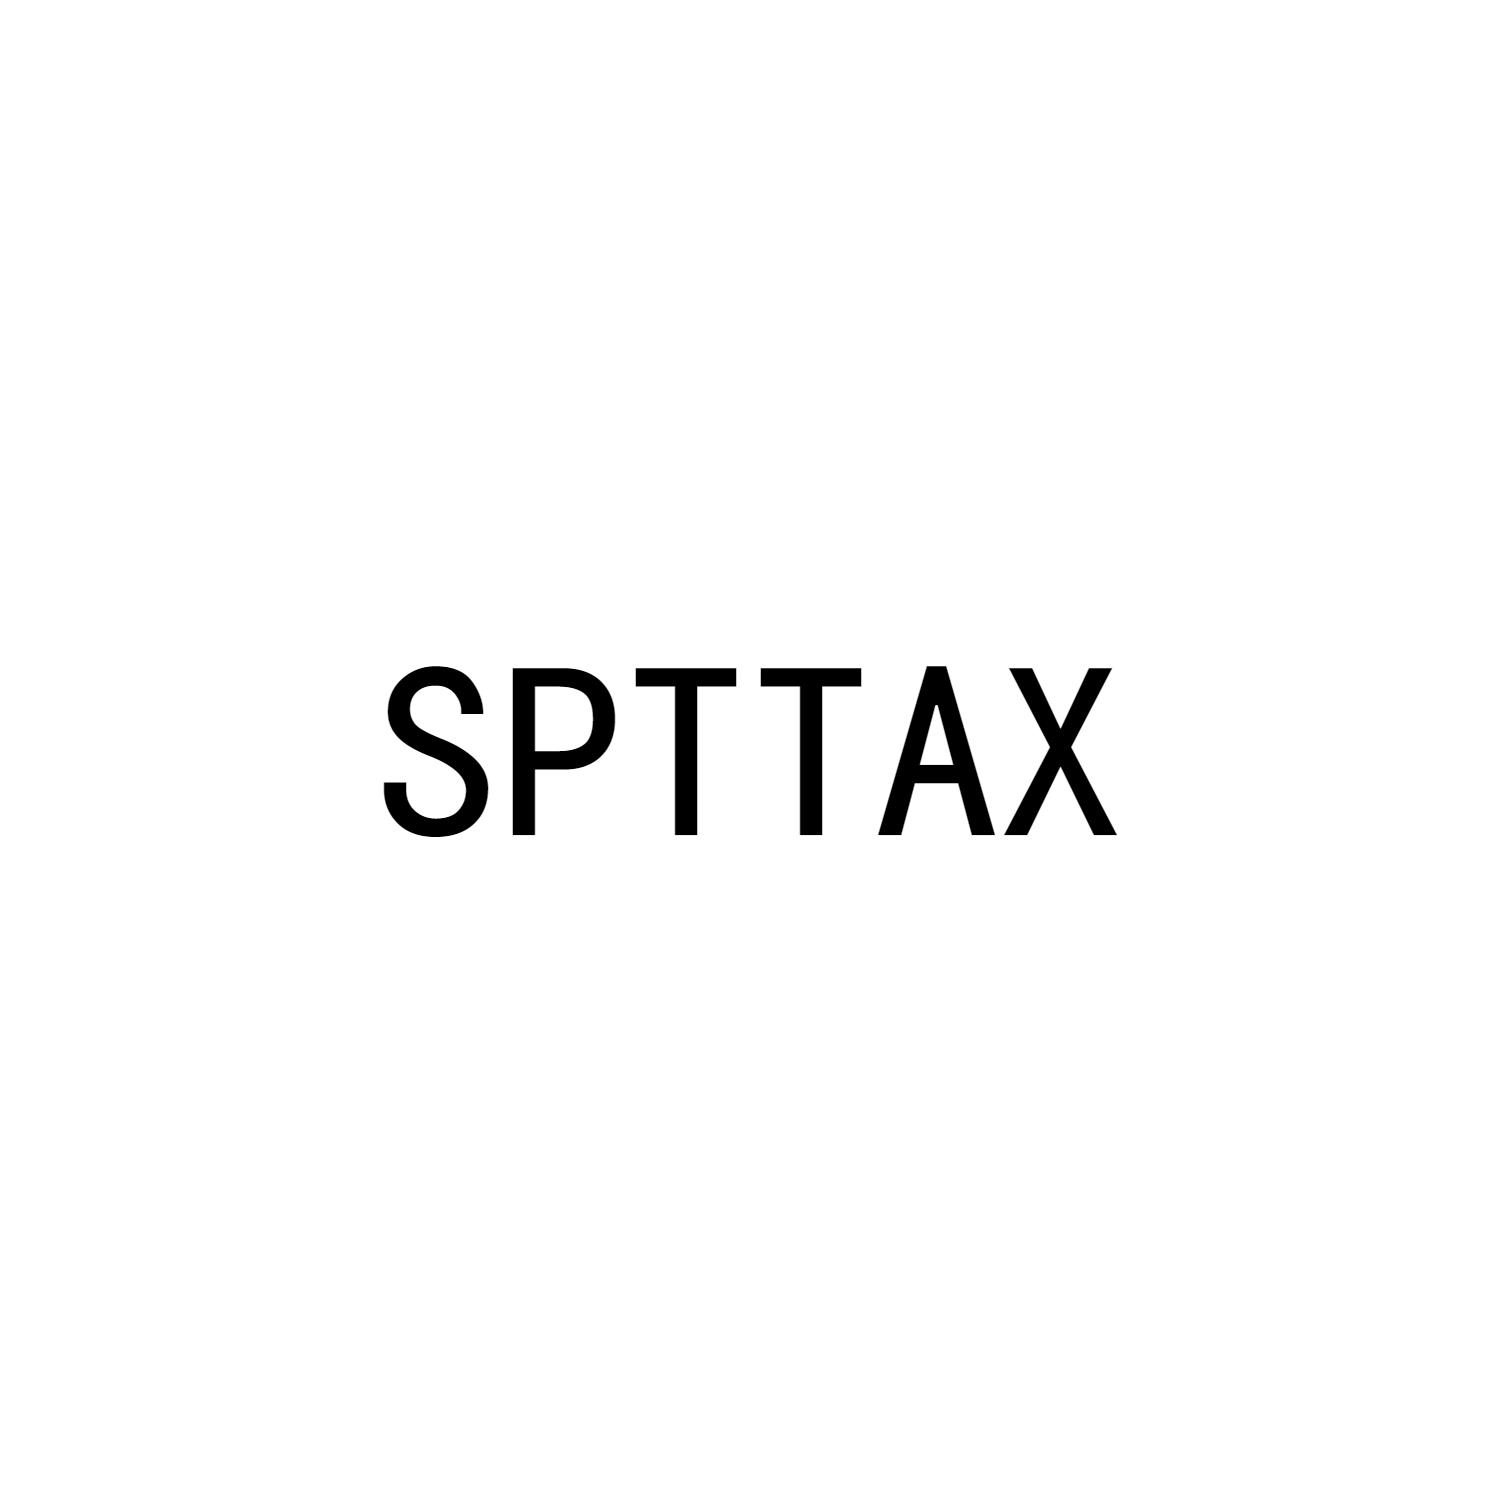 SPTTAX